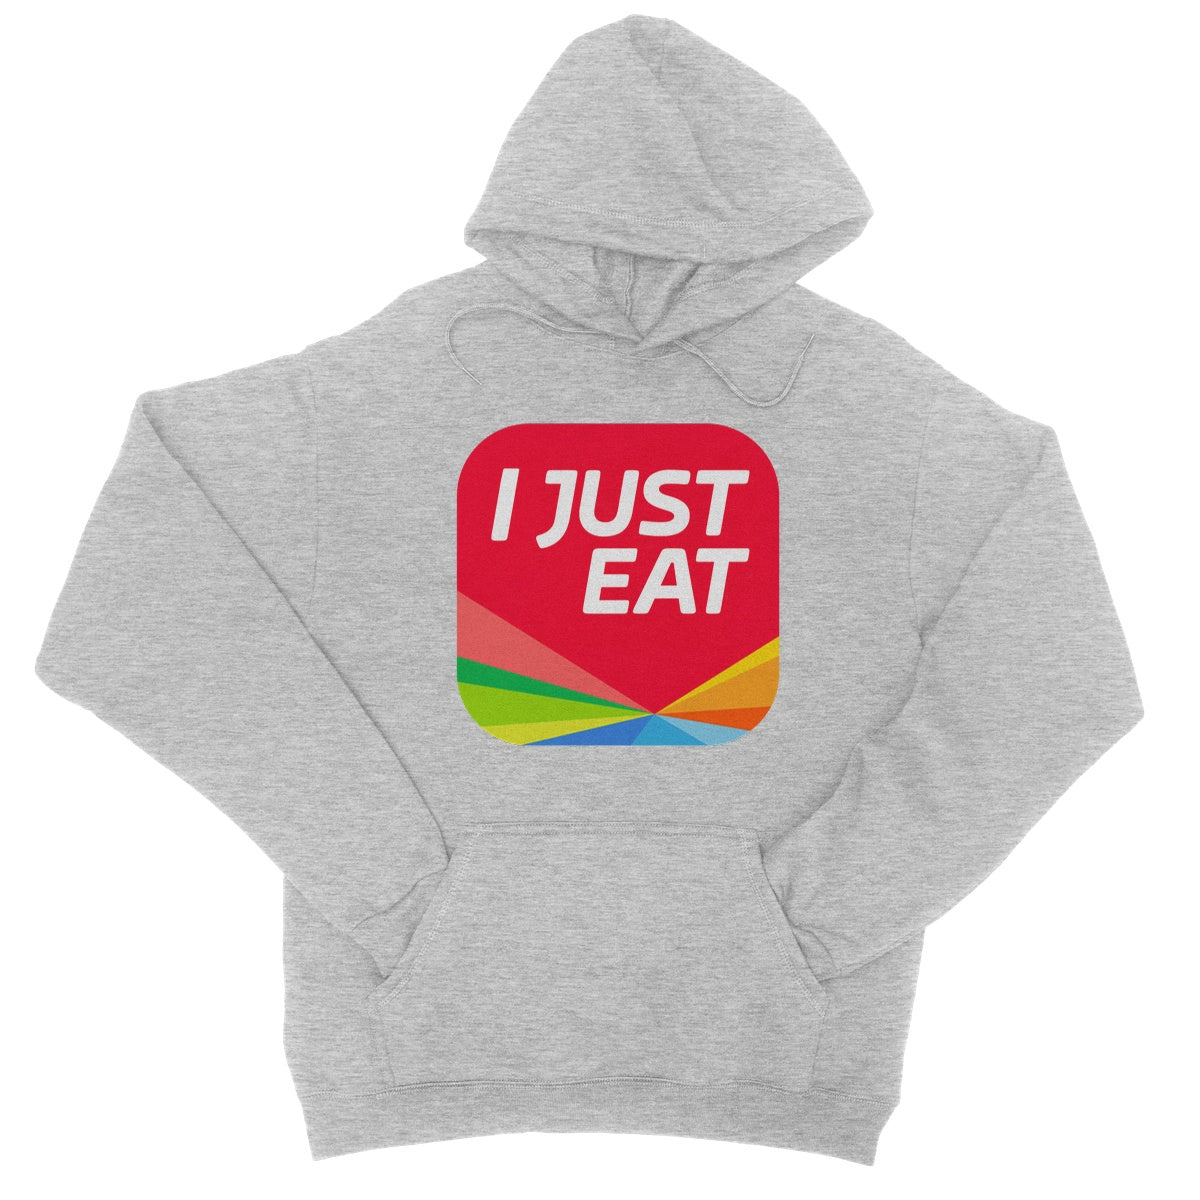 I just eat t hoodie grey